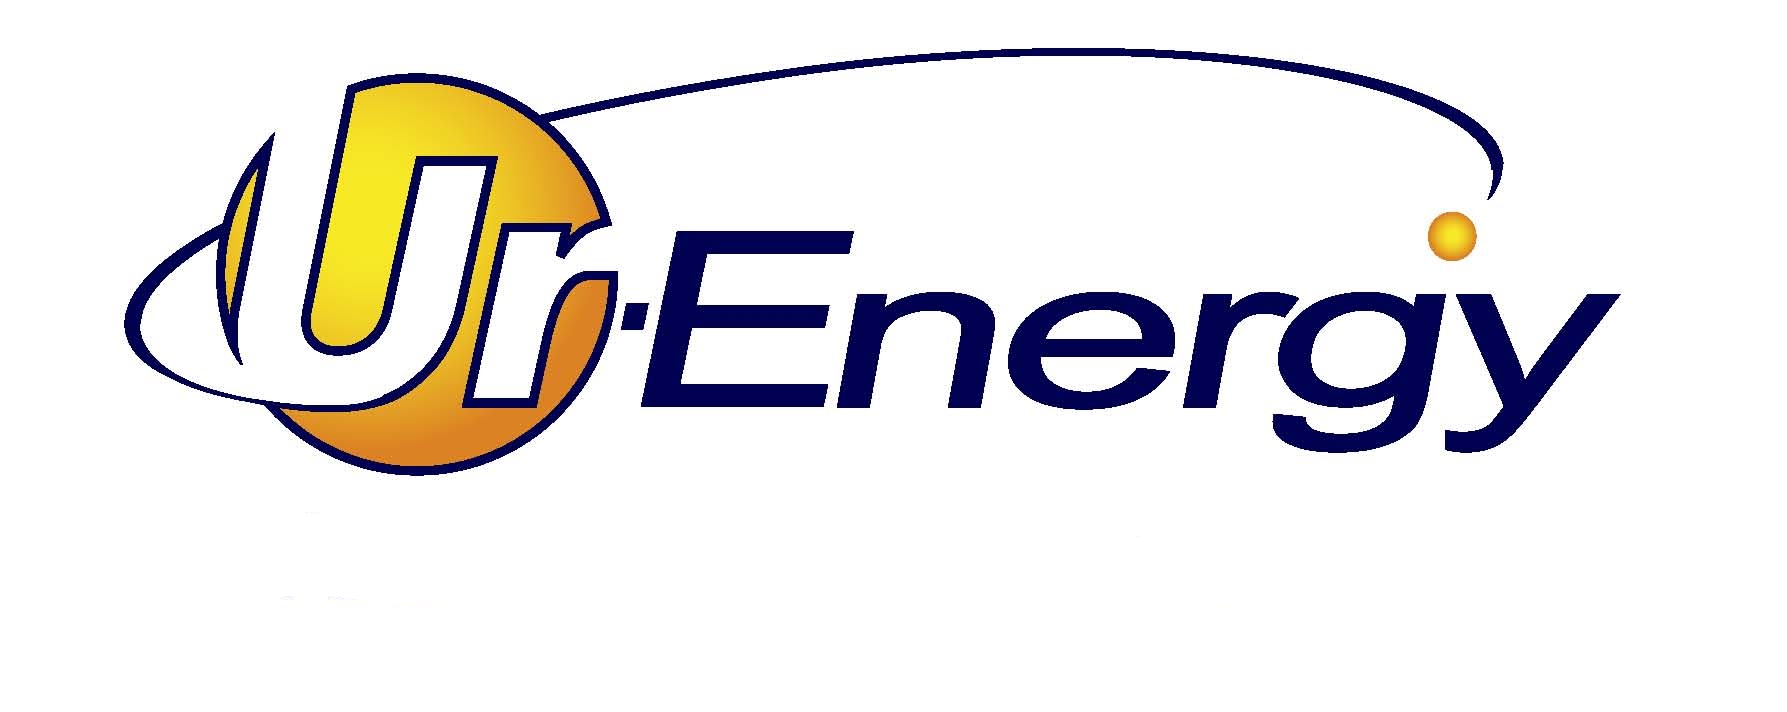 Ur-Energy Inc.